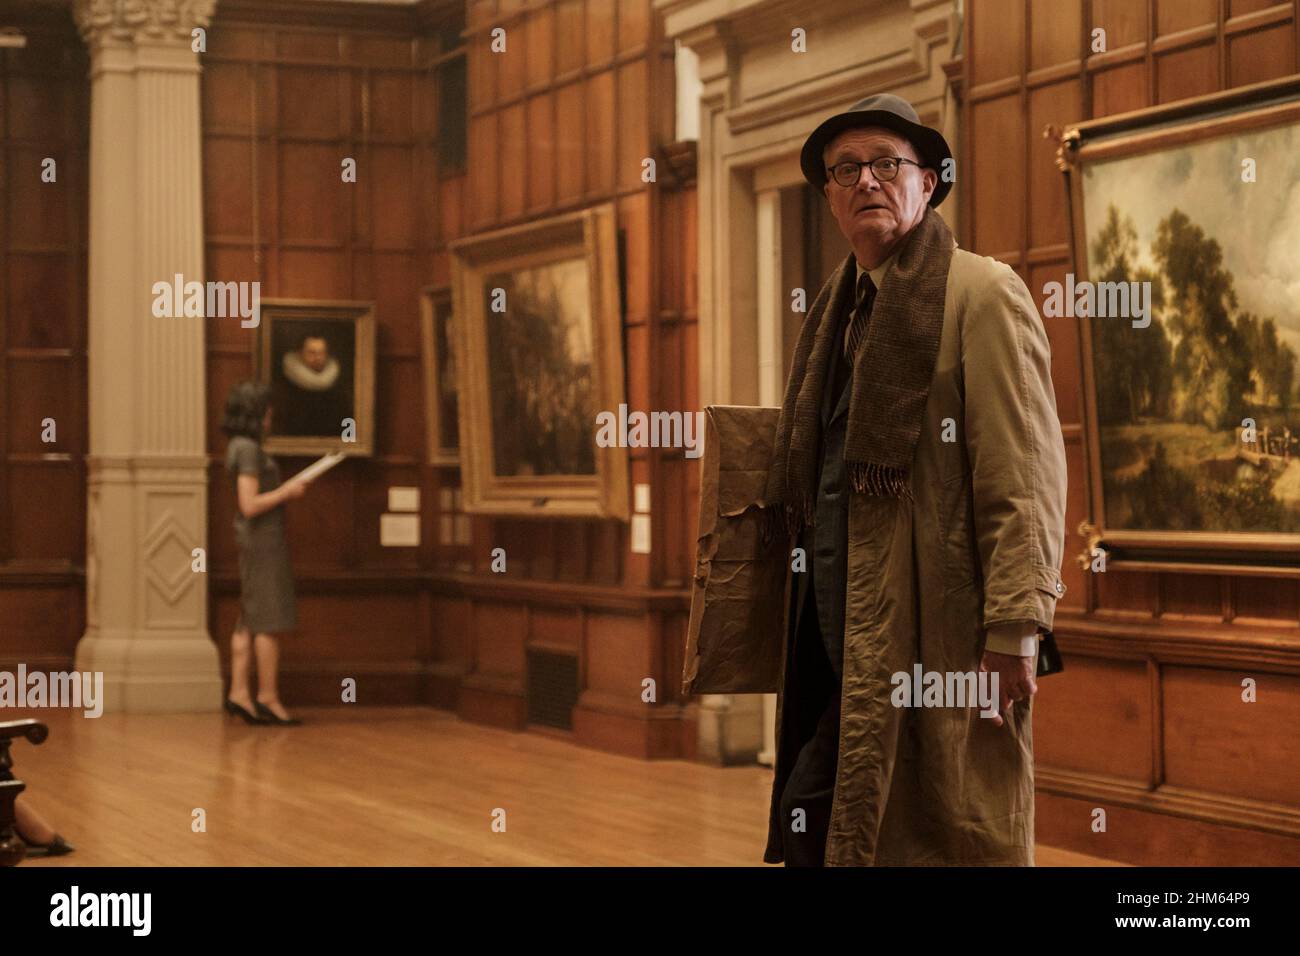 El duque (2020) dirigido por Roger Michell y protagonizado por Jim Broadbent como Kempton Bunton, un taxista de 60 años que robó el retrato de Goya del duque de Wellington de la Galería Nacional de Londres en 1961. Foto de stock